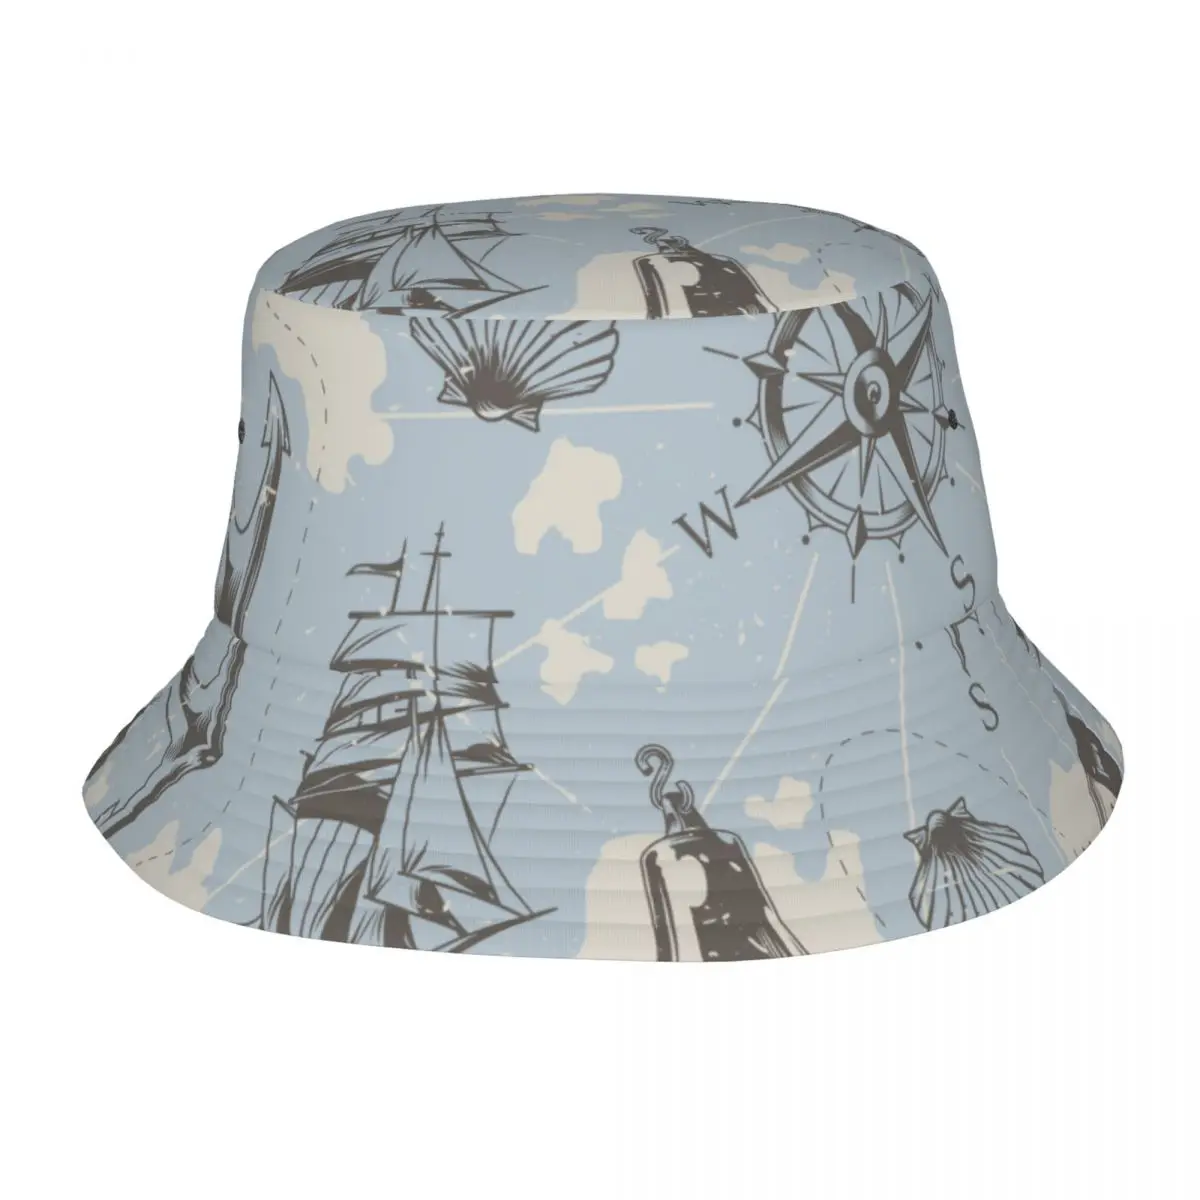 

Панама, кепка для рыбака, летняя винтажная морская шляпа с изображением рыбы-меча, кораблем, якоря, маяков, морских ракушек, компаса